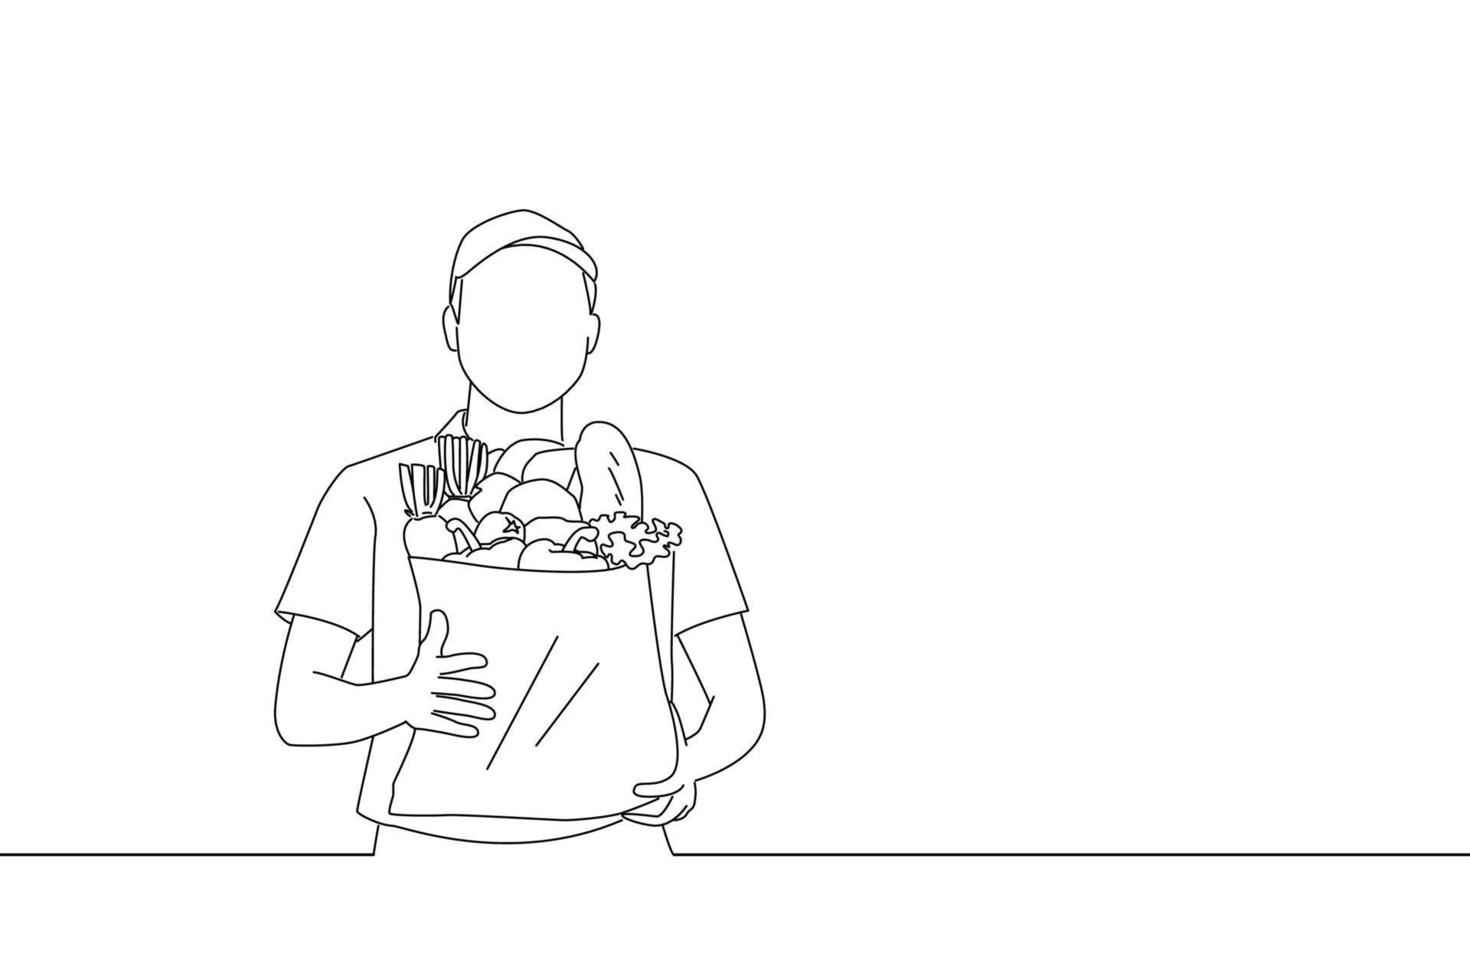 Drawing of delivery man holding fresh food paper bag door to door. One line art vector